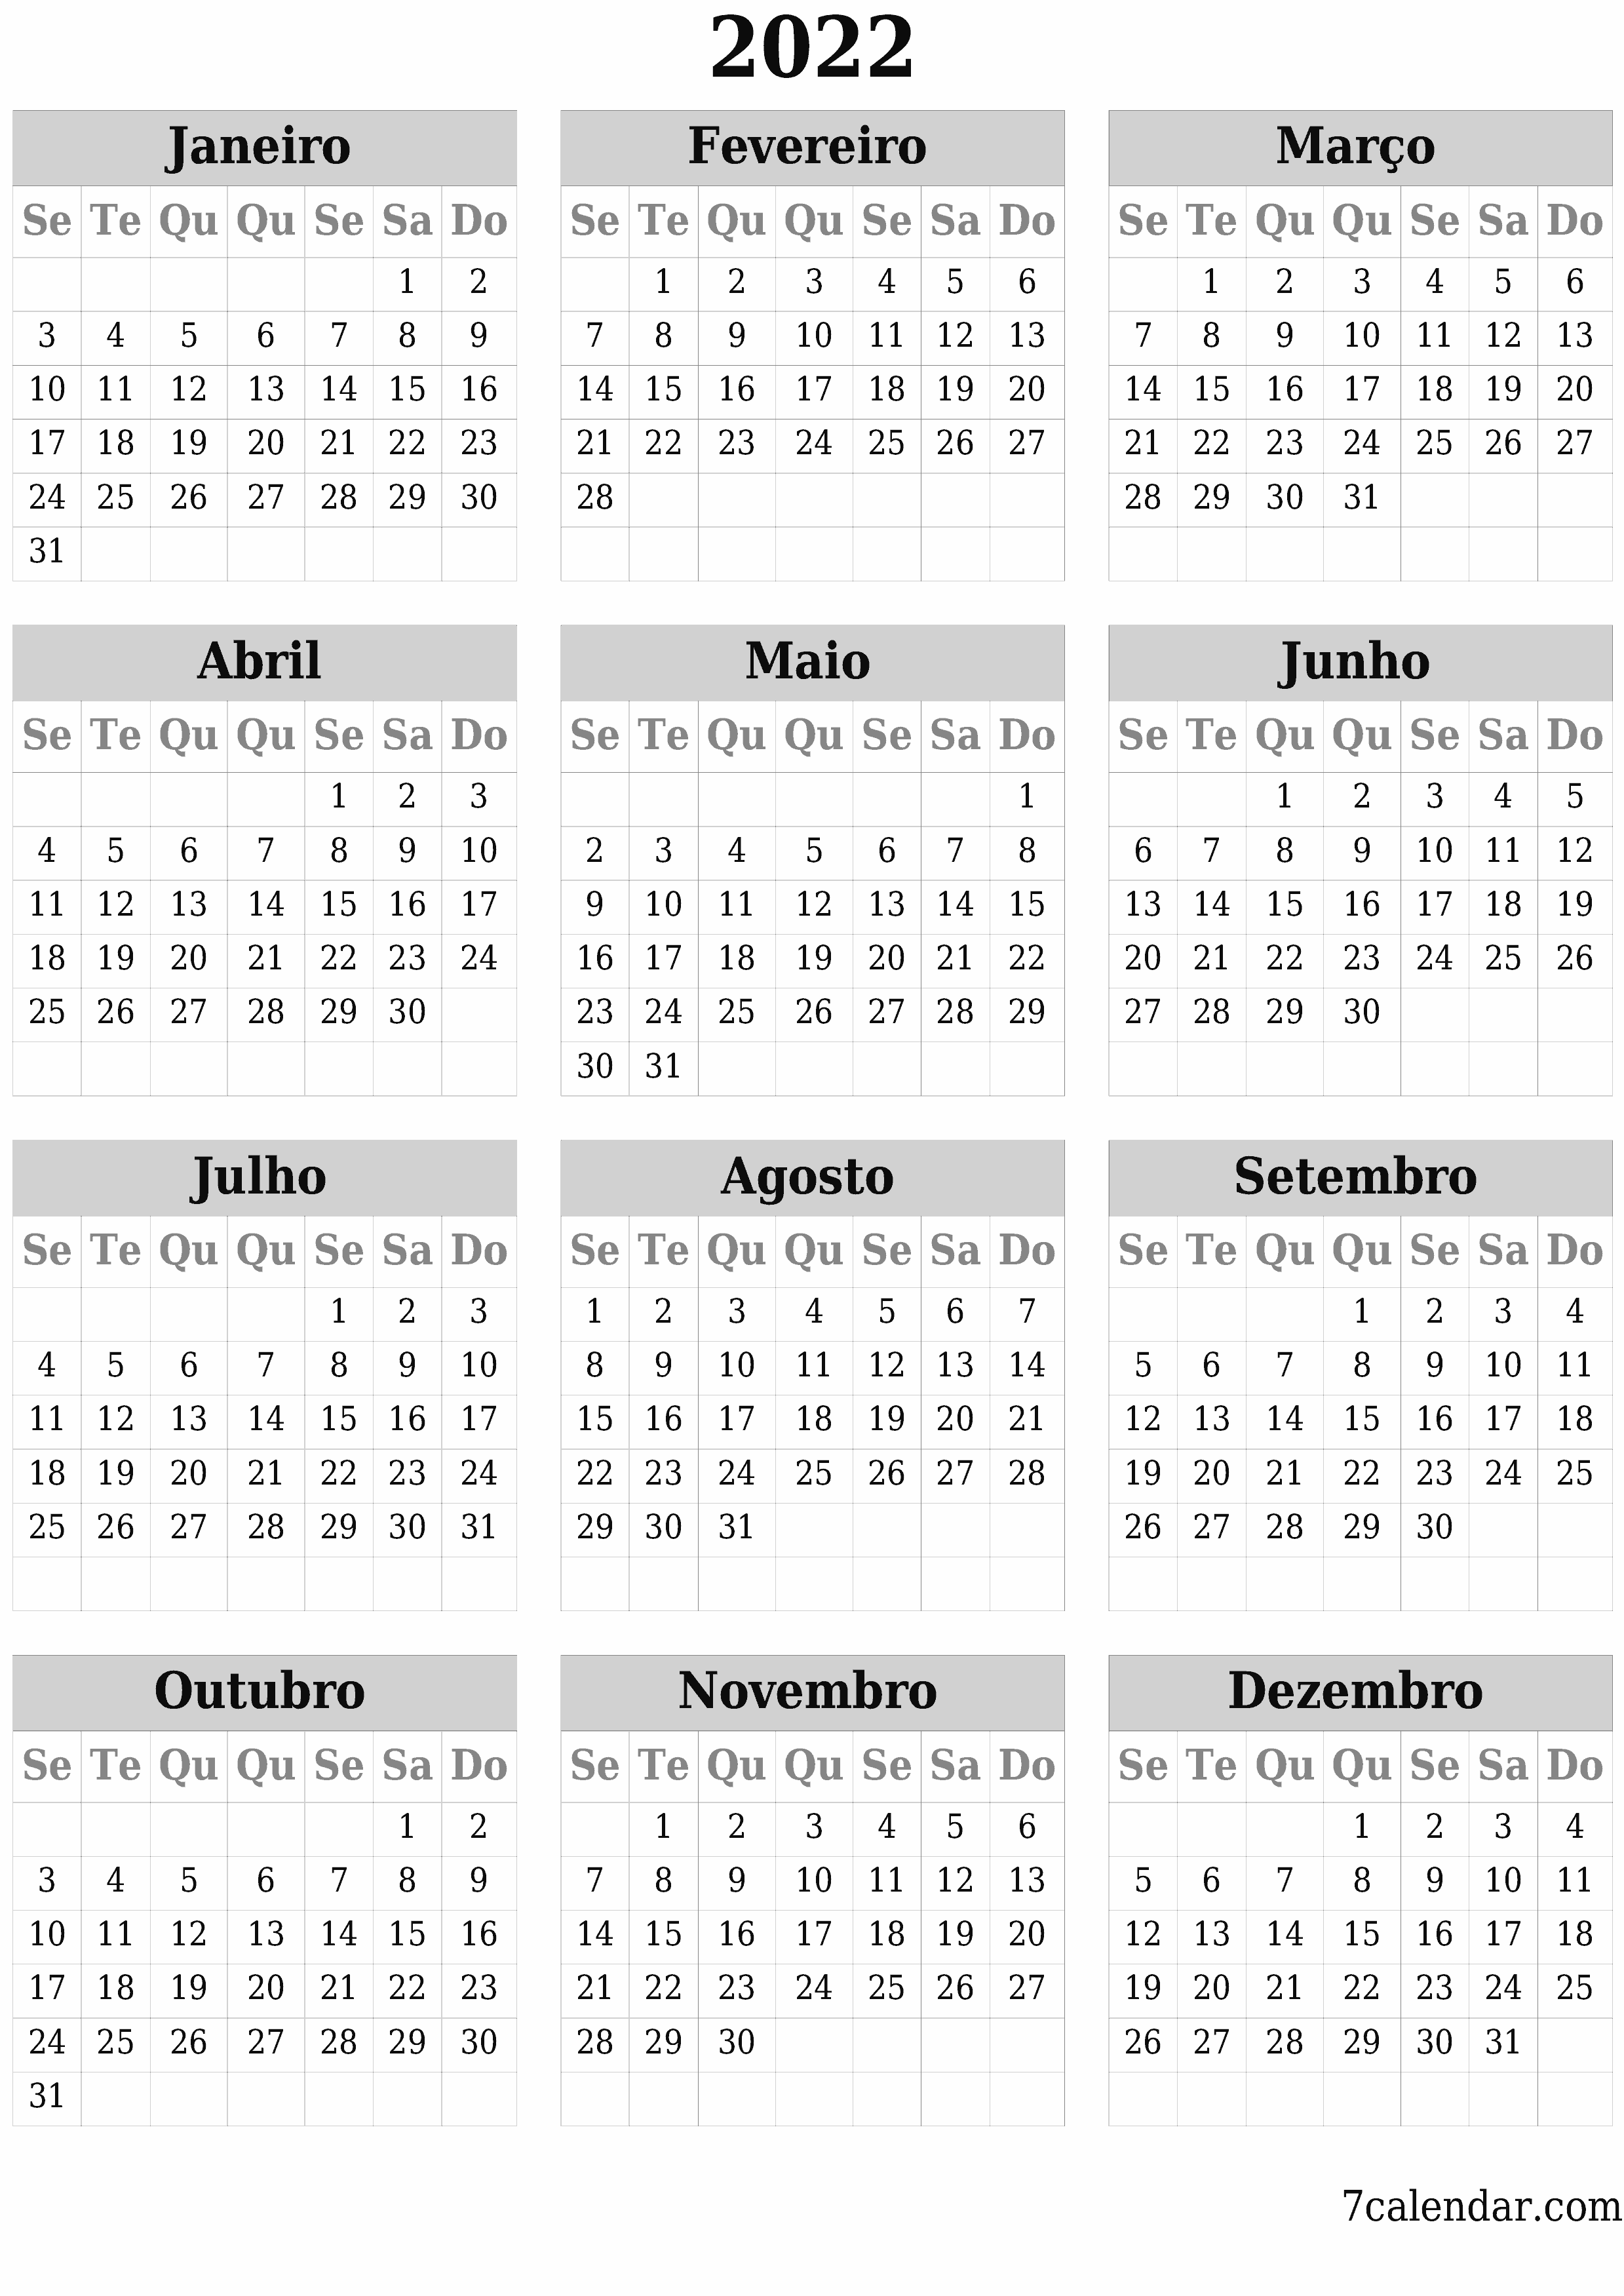 Calendário anual em branco para o ano 2022 salvar e imprimir em PDF PNG Portuguese - 7calendar.com